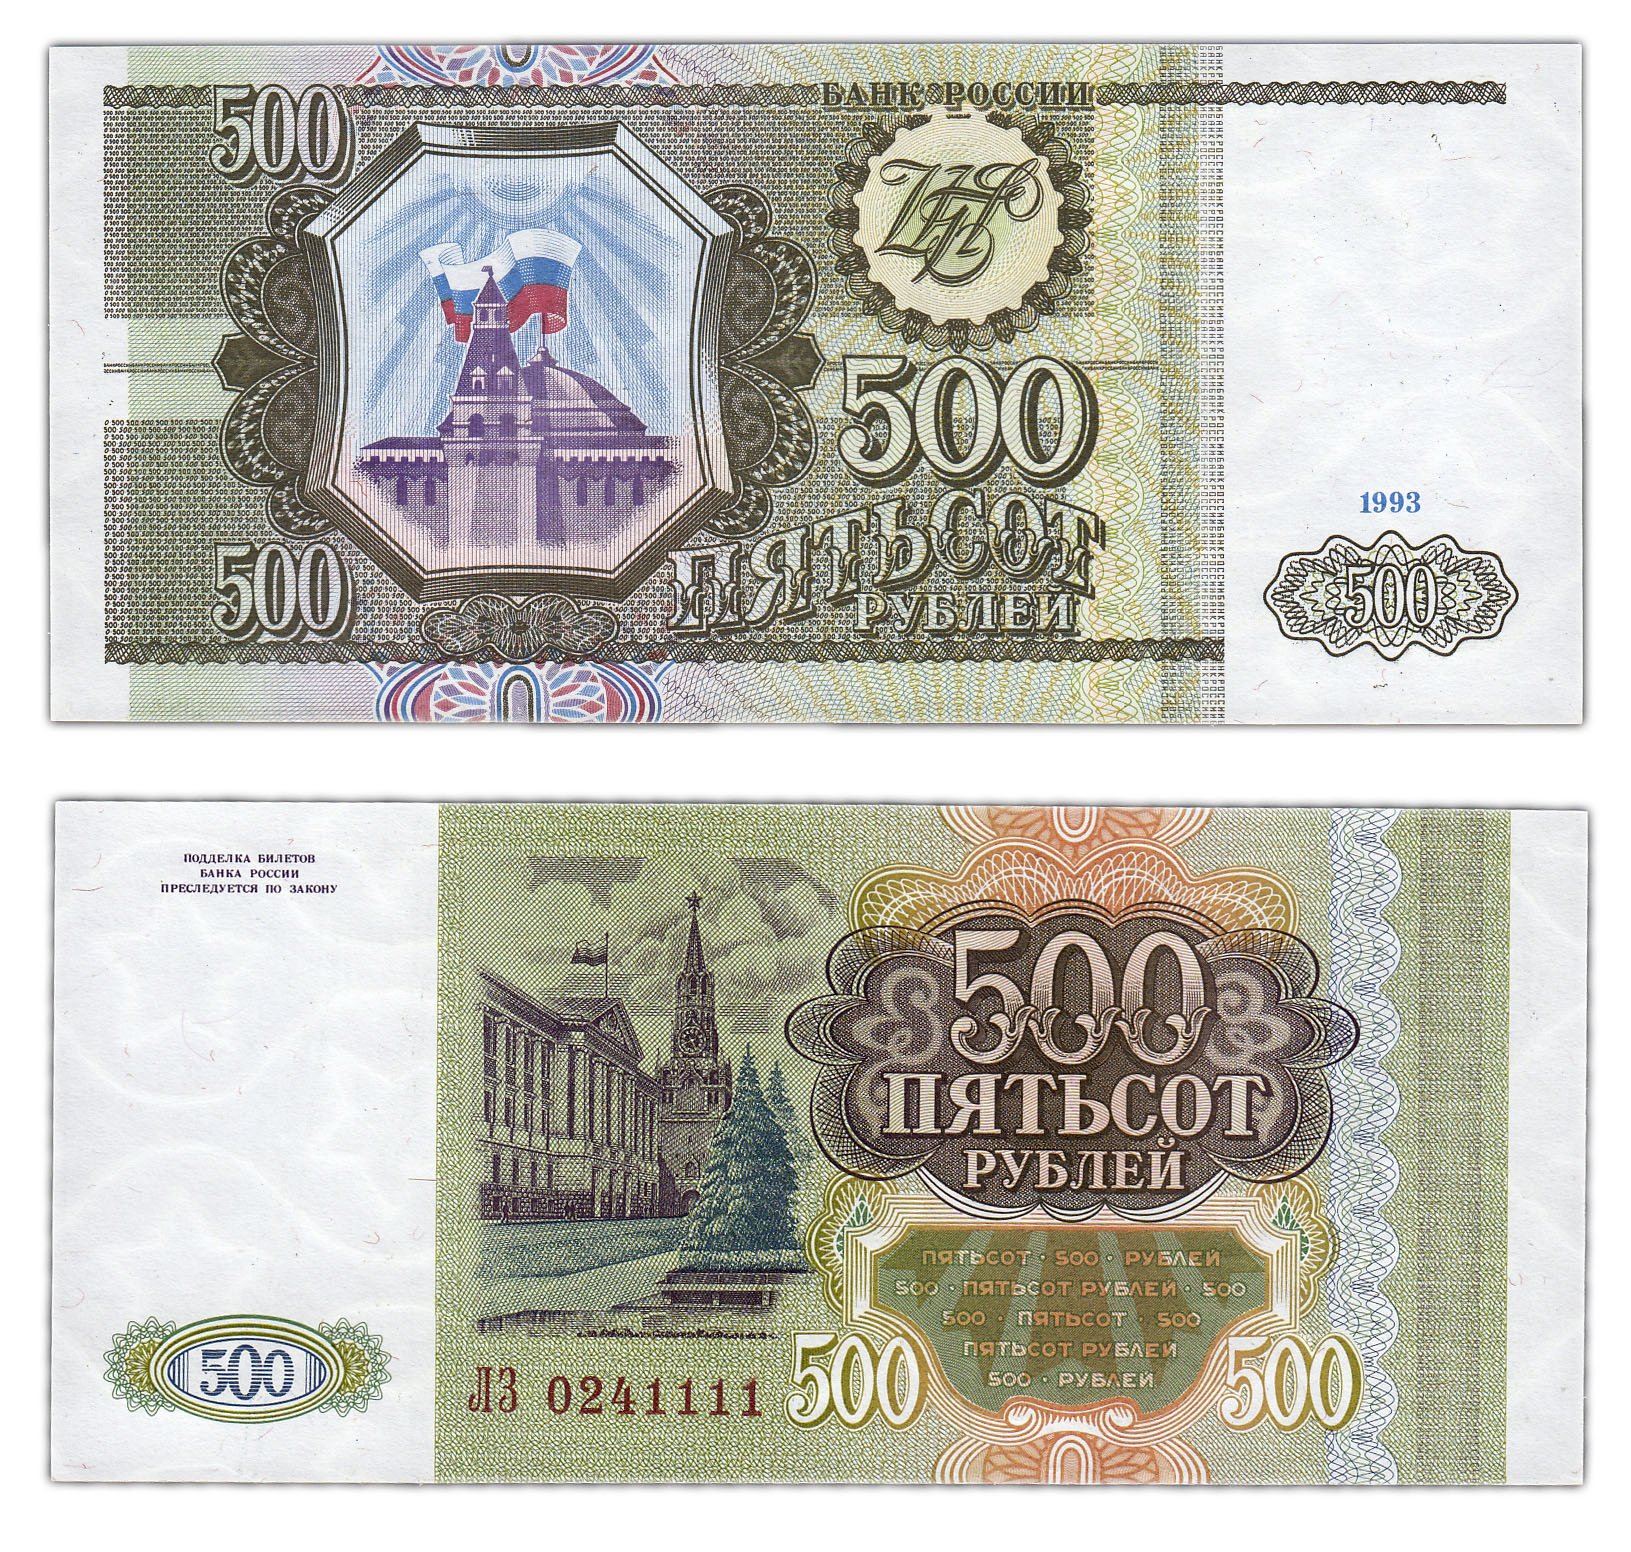 500 г в в рублях. Купюра 500 рублей 1993. Пятьсот рублей 1993 года. 500 Рублей 1993 бумажные. 500 Рублей 1993 года бумажные.